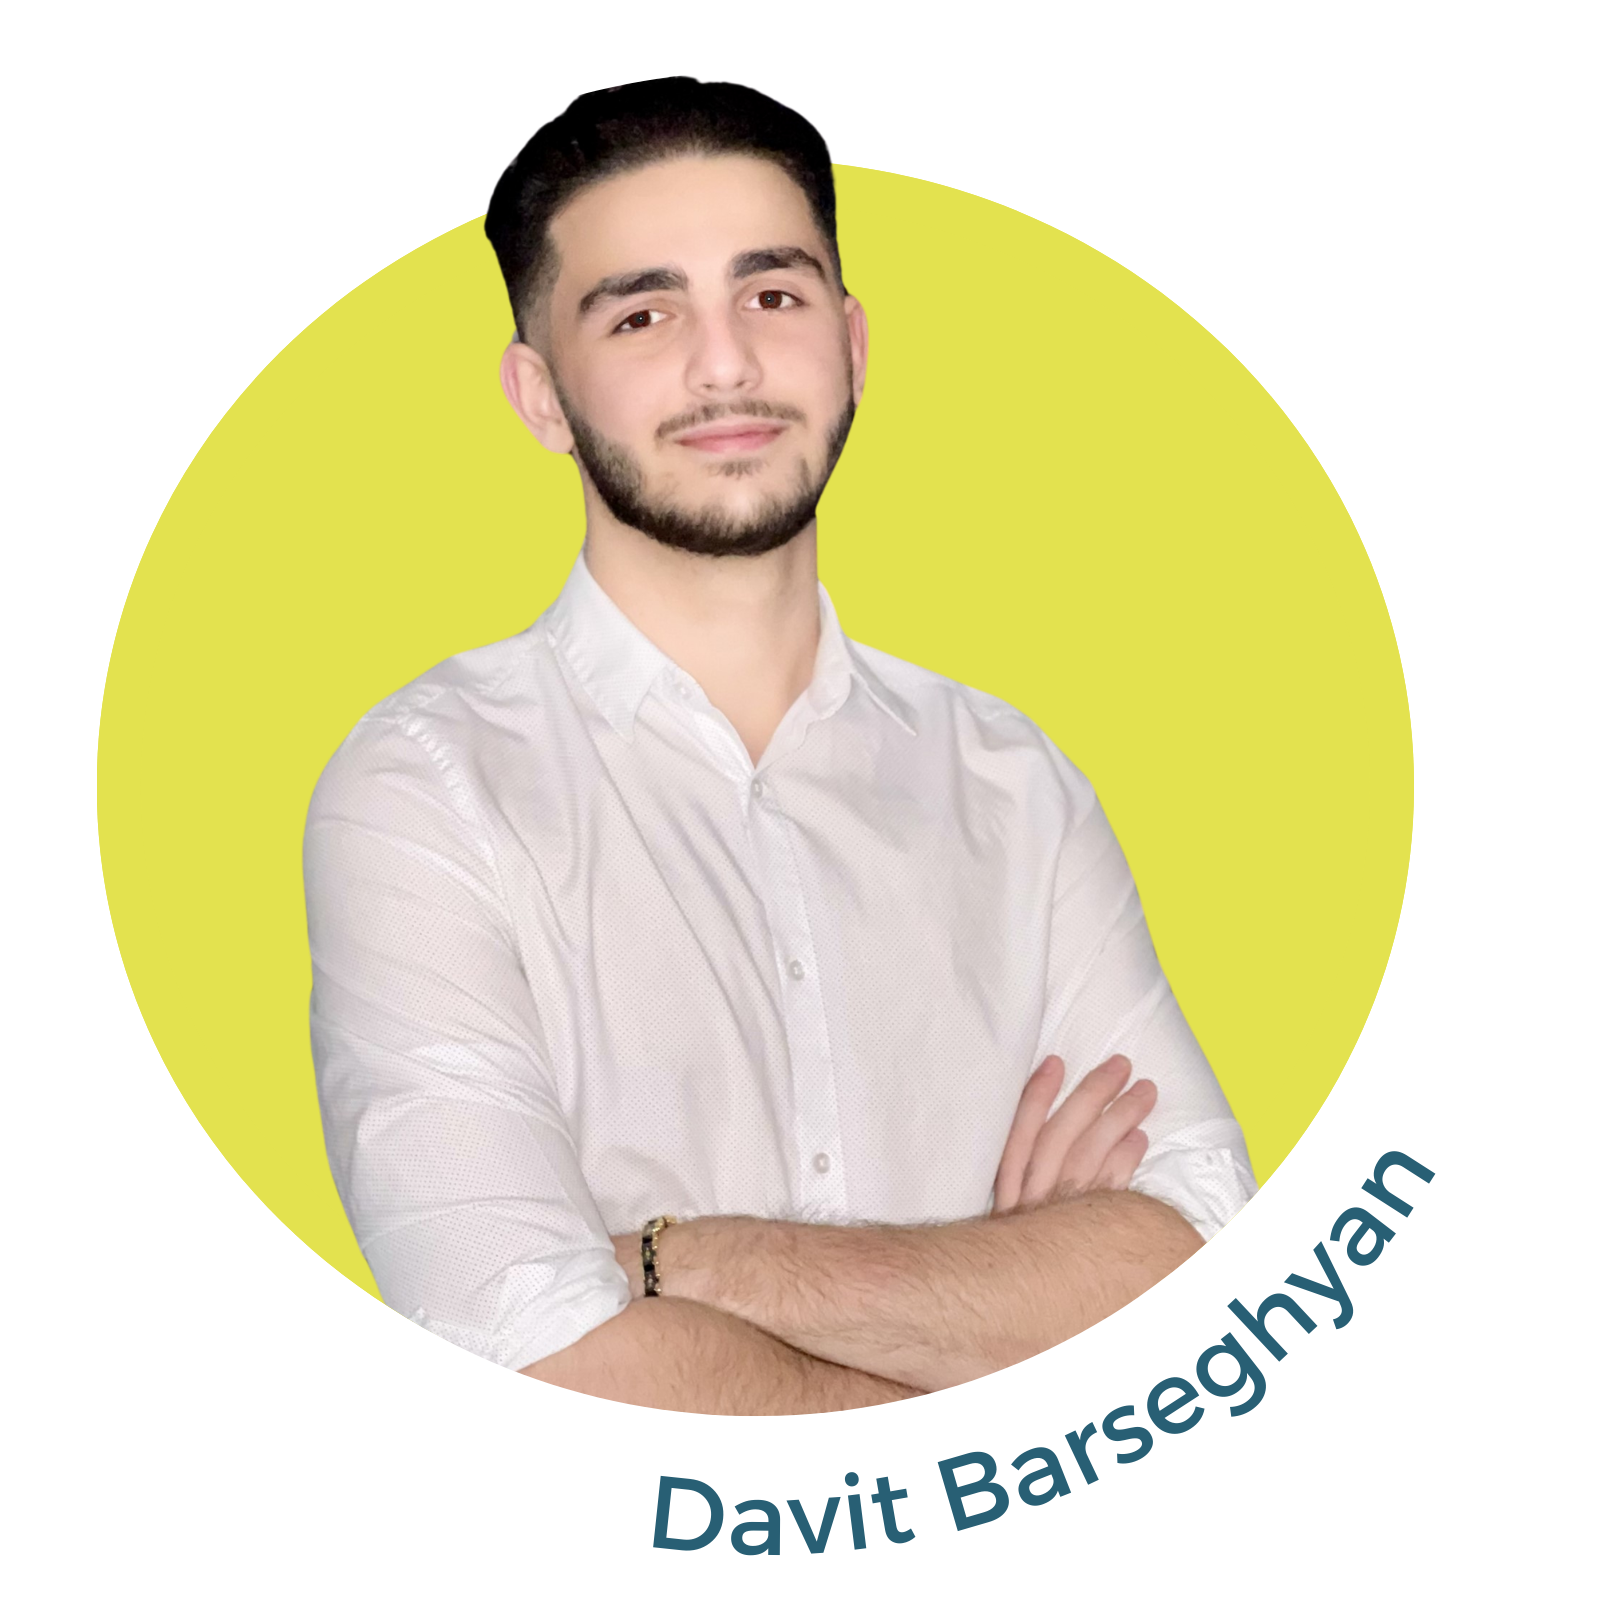 Davit Barseghyan